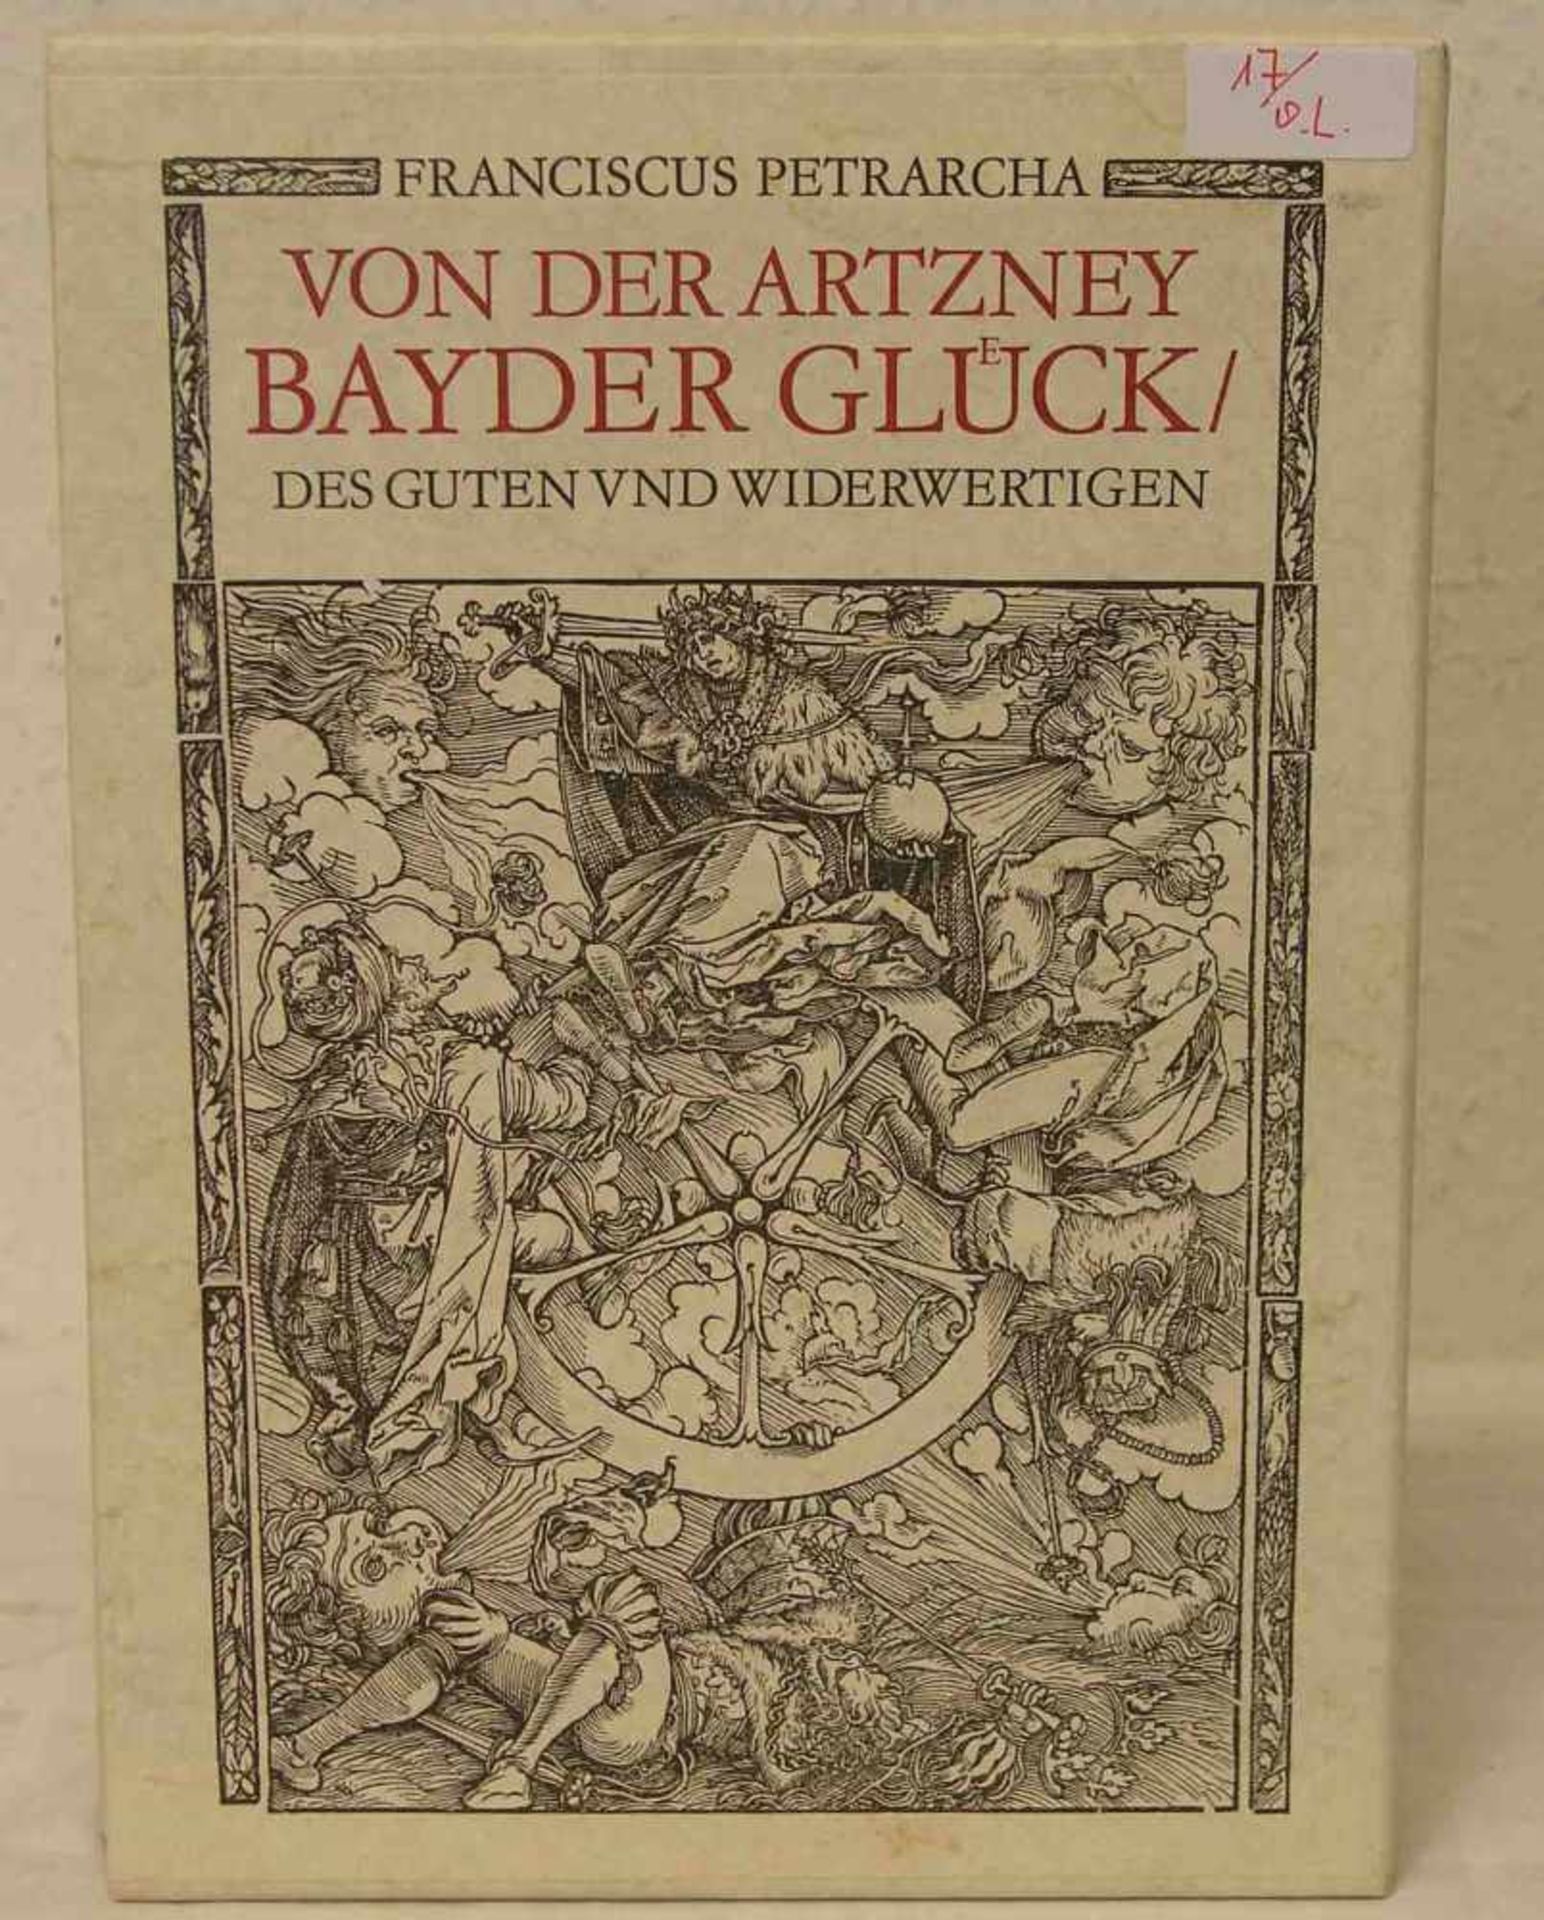 Franciscus Petrarcha: "Von der Artzney Bayder Glück des Guten und Widerwertigen".Faksimile der